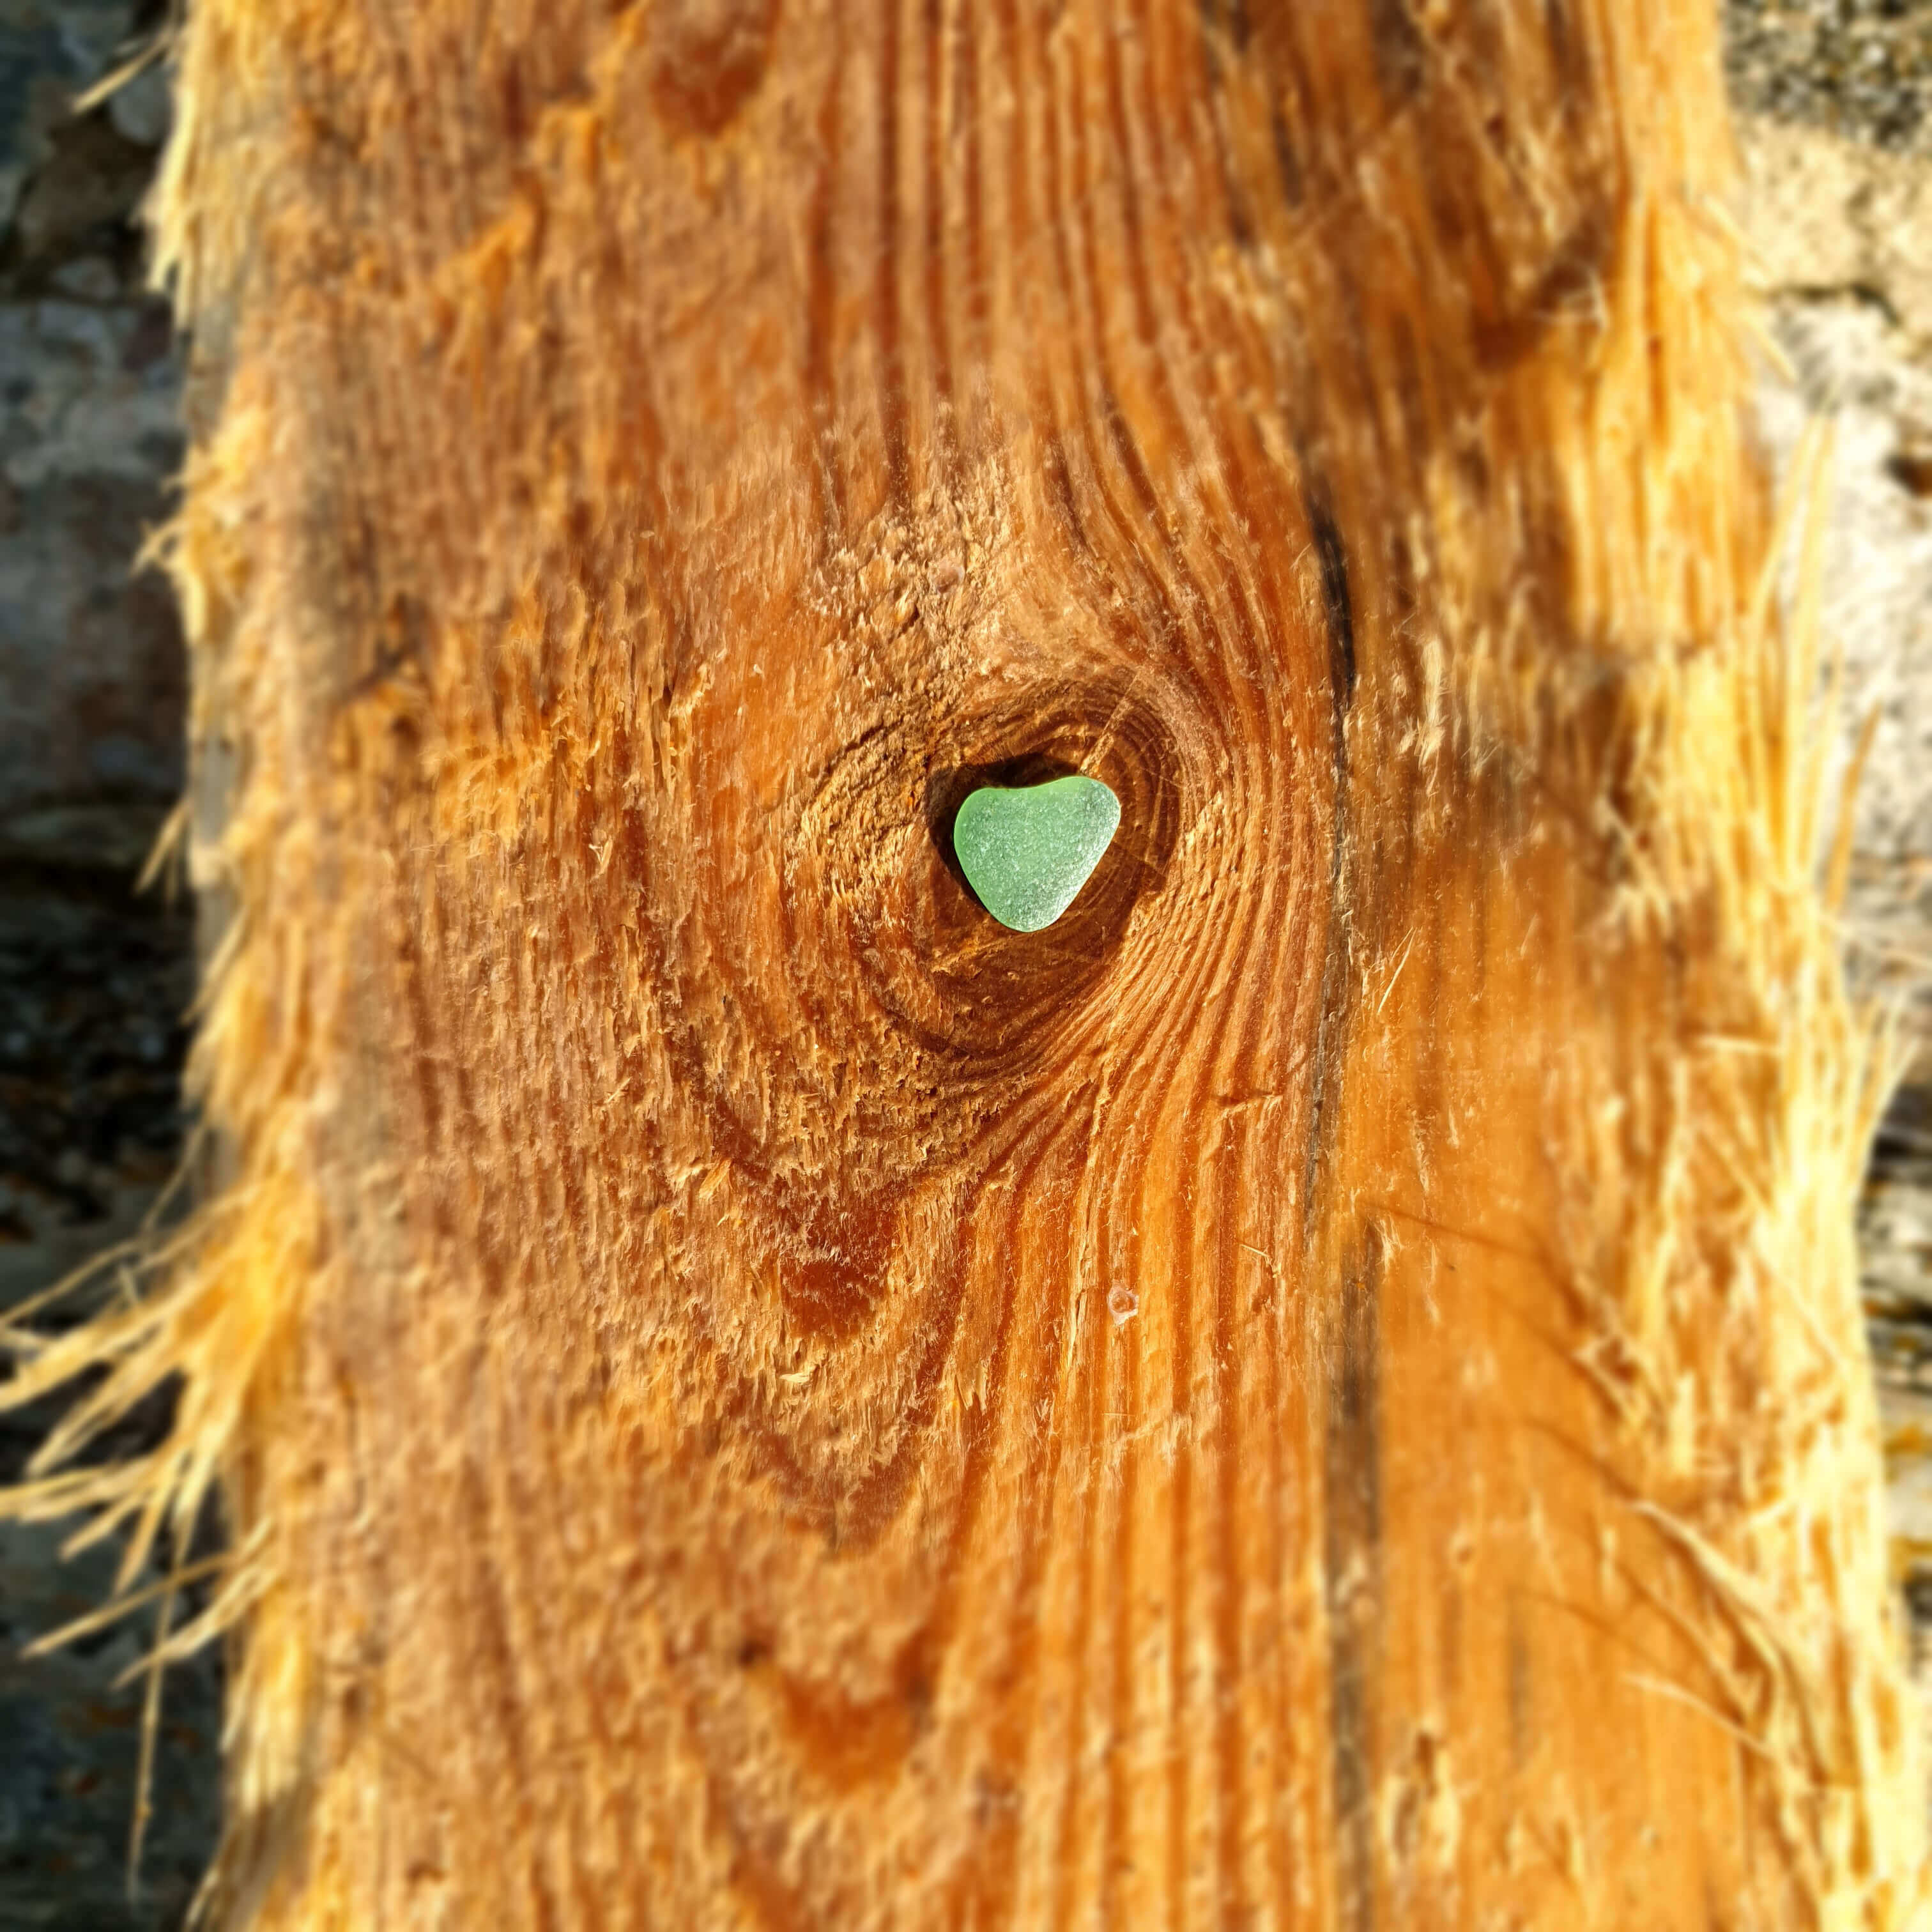 Cœur de verre poli, de coloris vert sur une planche de bois